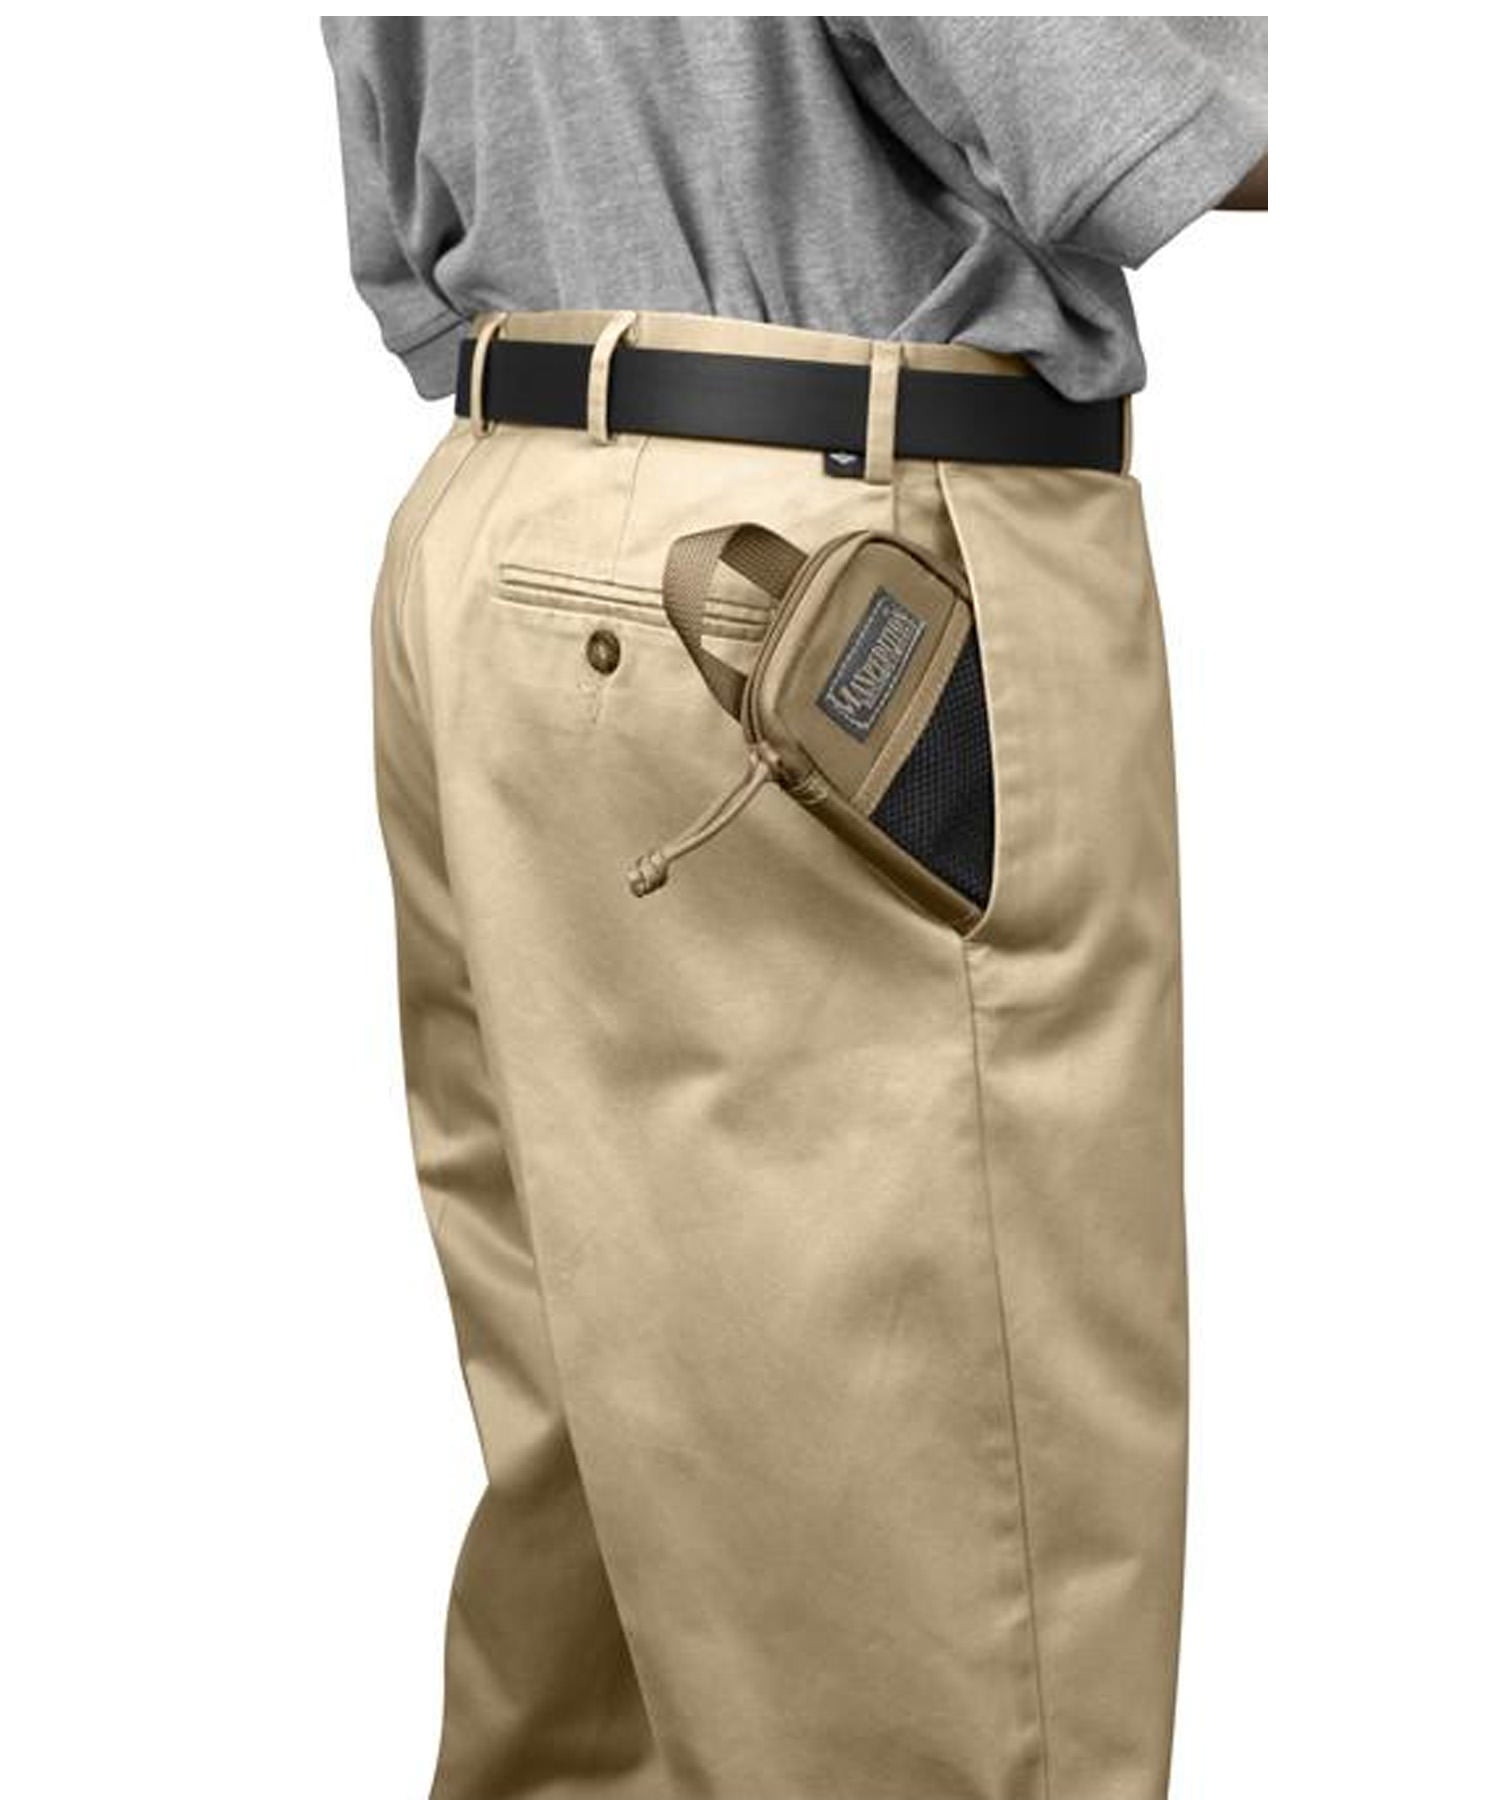 Tasca maxpedition micro pocket  alloggiata nella tasca dei pantaloni